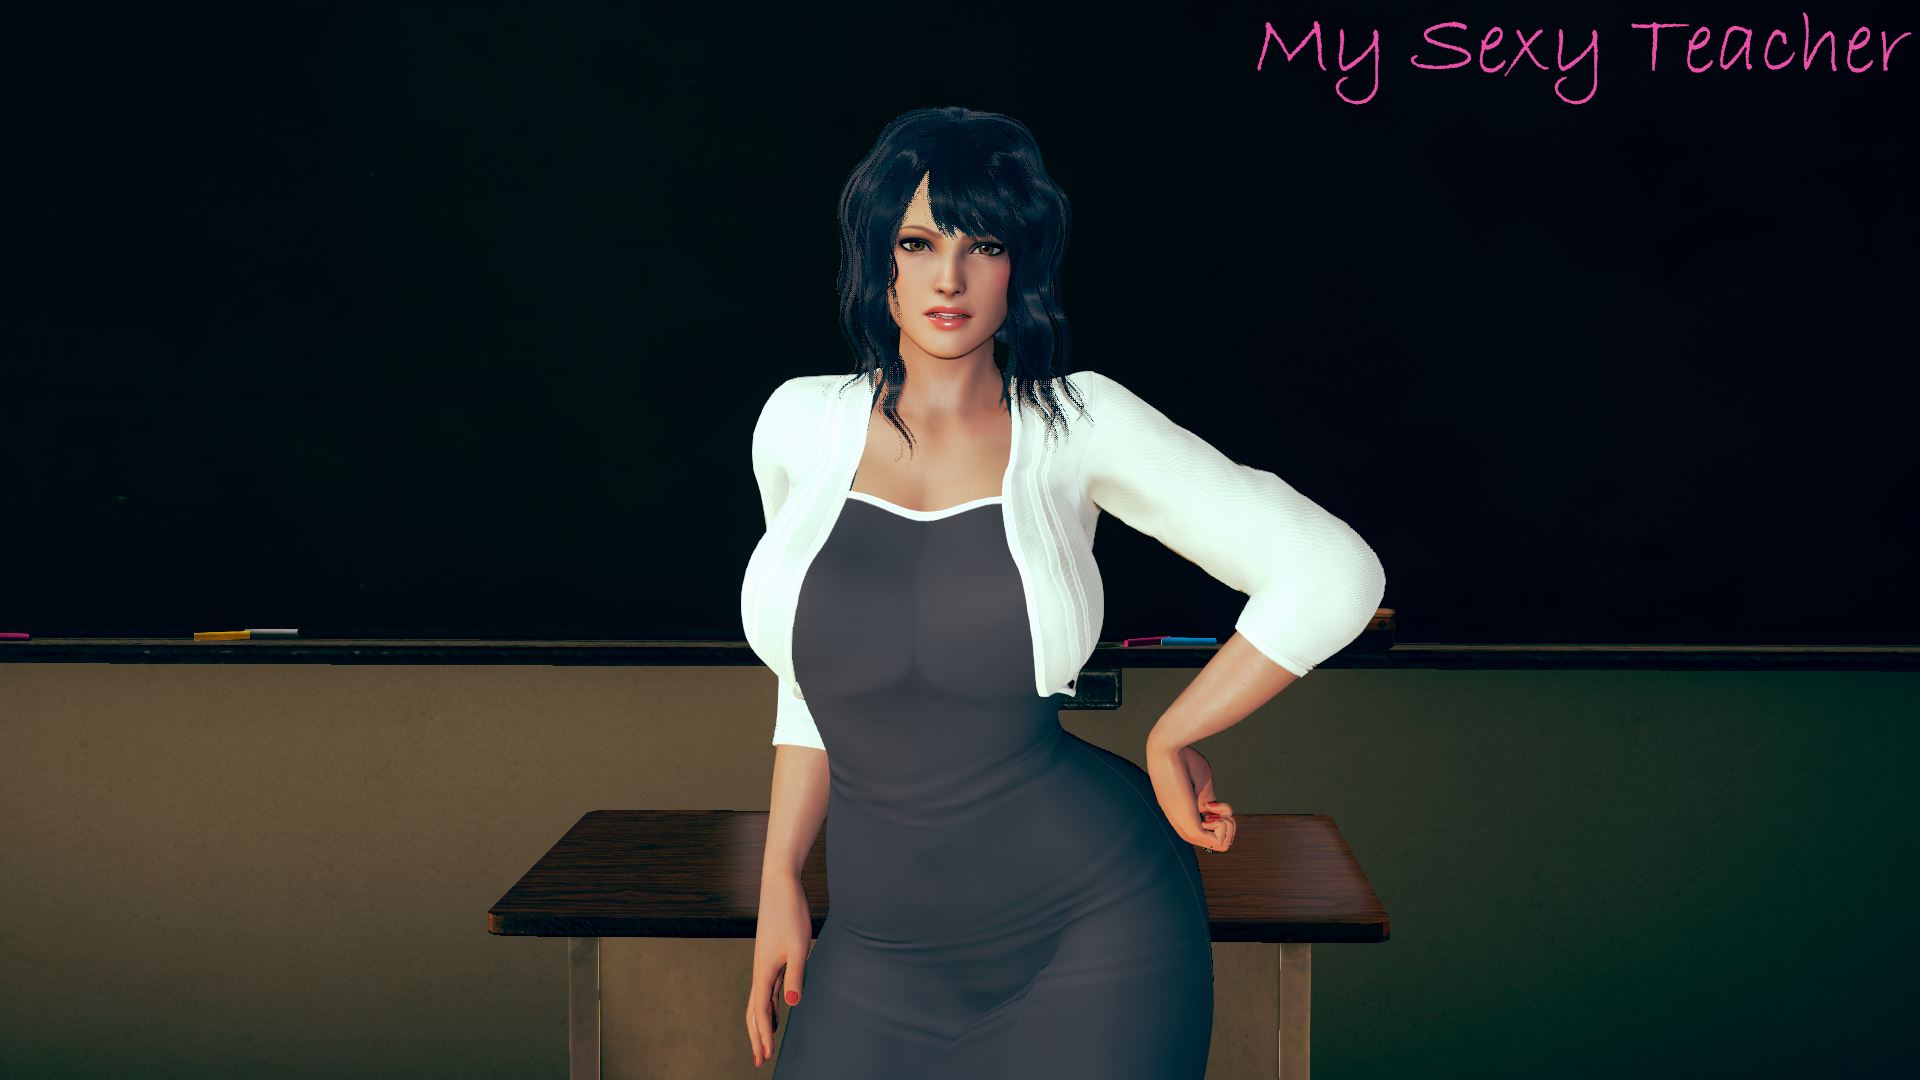 1920px x 1080px - Ren'Py] My Sexy Teacher - v0.05 by Sitayo 18+ Adult xxx Porn Game Download